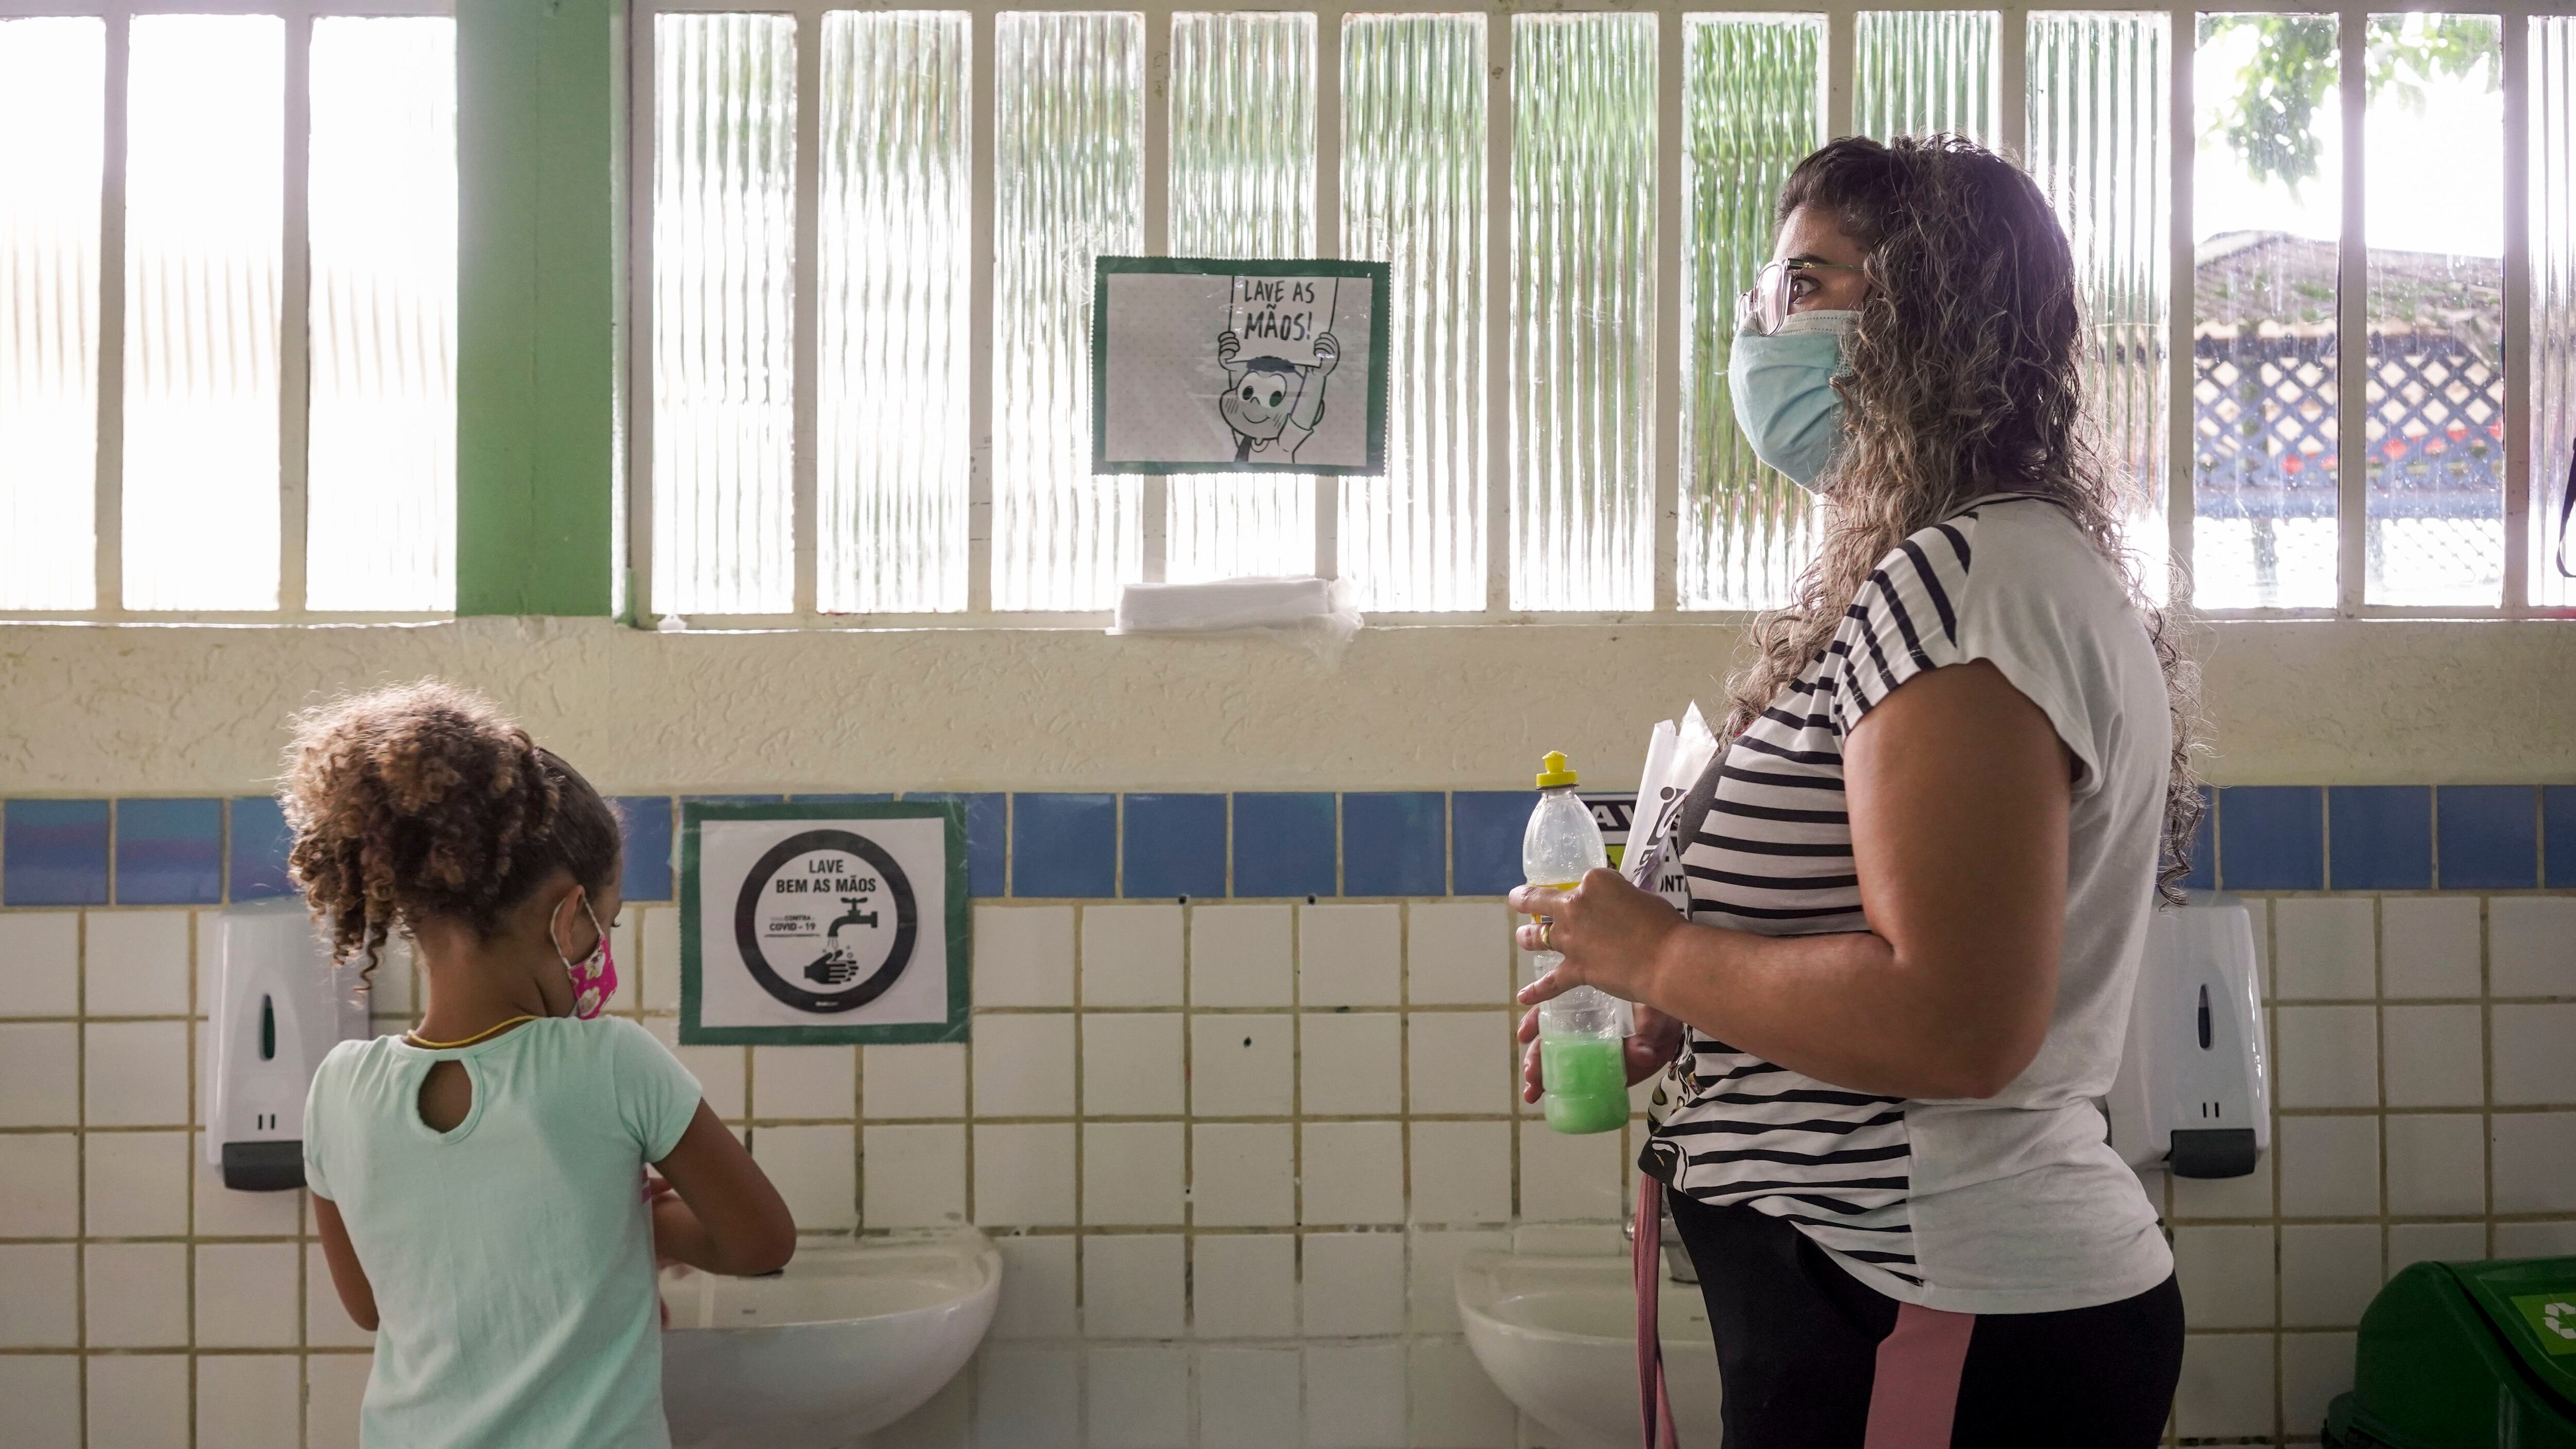 Las profesoras de este centro educativo de São Paulo están muy pendientes de que sus alumnos cumplan con todas las medidas de higiene. Pincha en la imagen para ver la fotogalería completa.